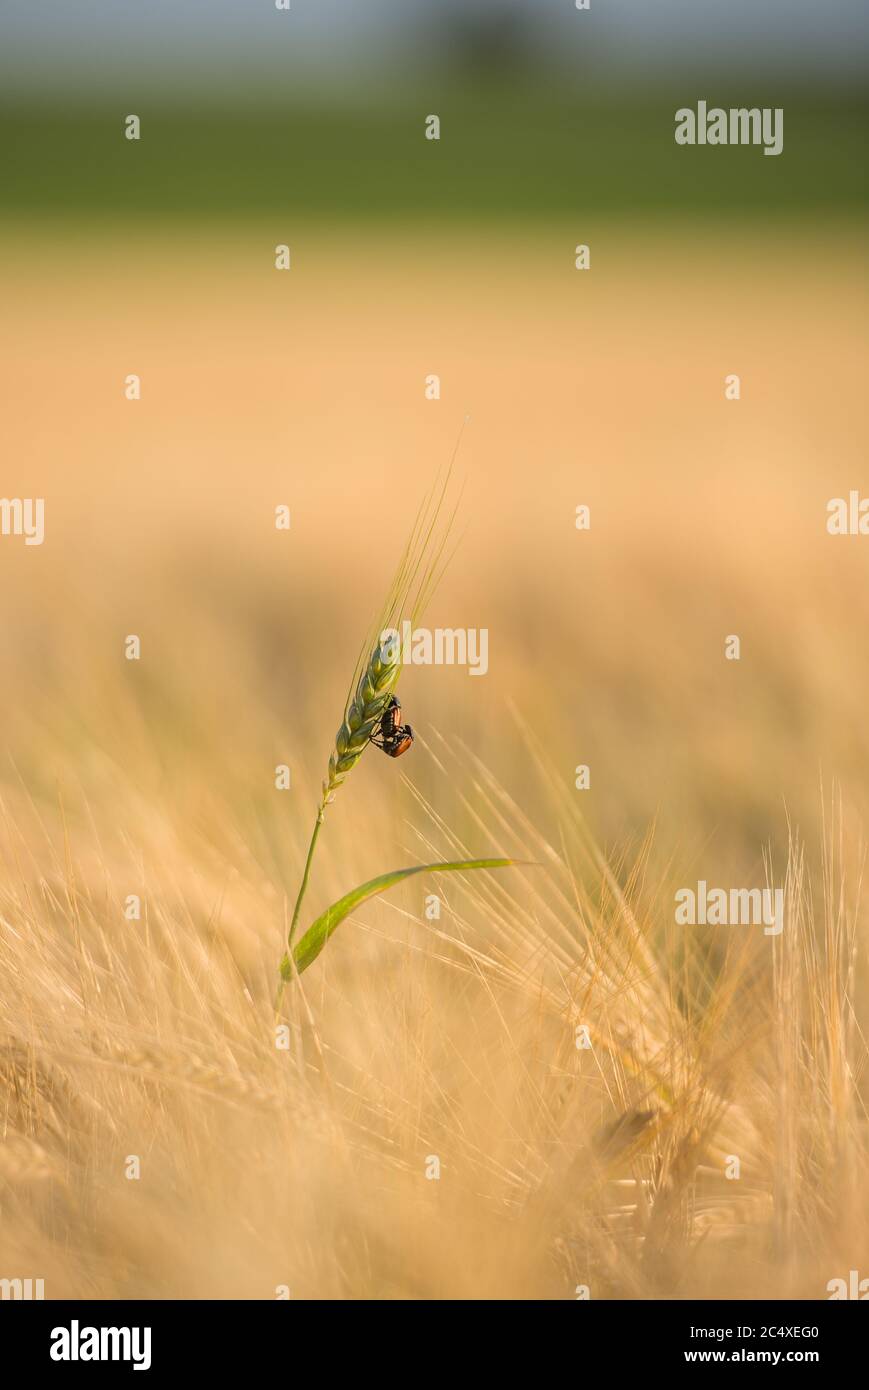 Zwei Käfer übereinander auf einer Ähre im Getreidefeld Foto Stock